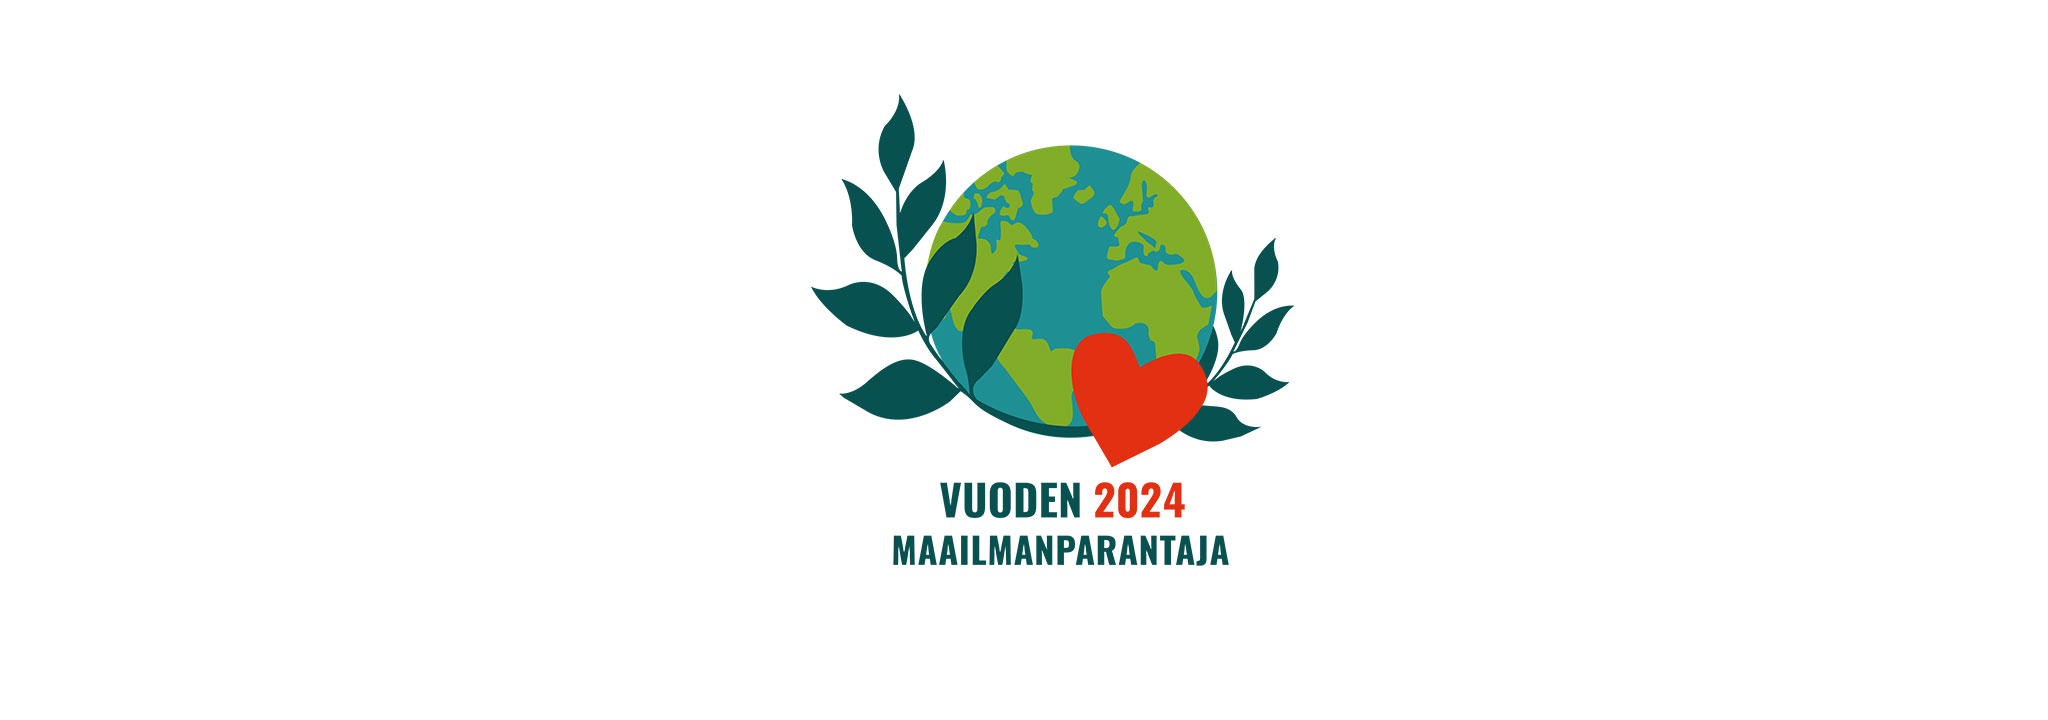 Vuoden maailmanparantaja 2024 -logo, jossa vihreät lehdet, punainen sydän ja maapallo